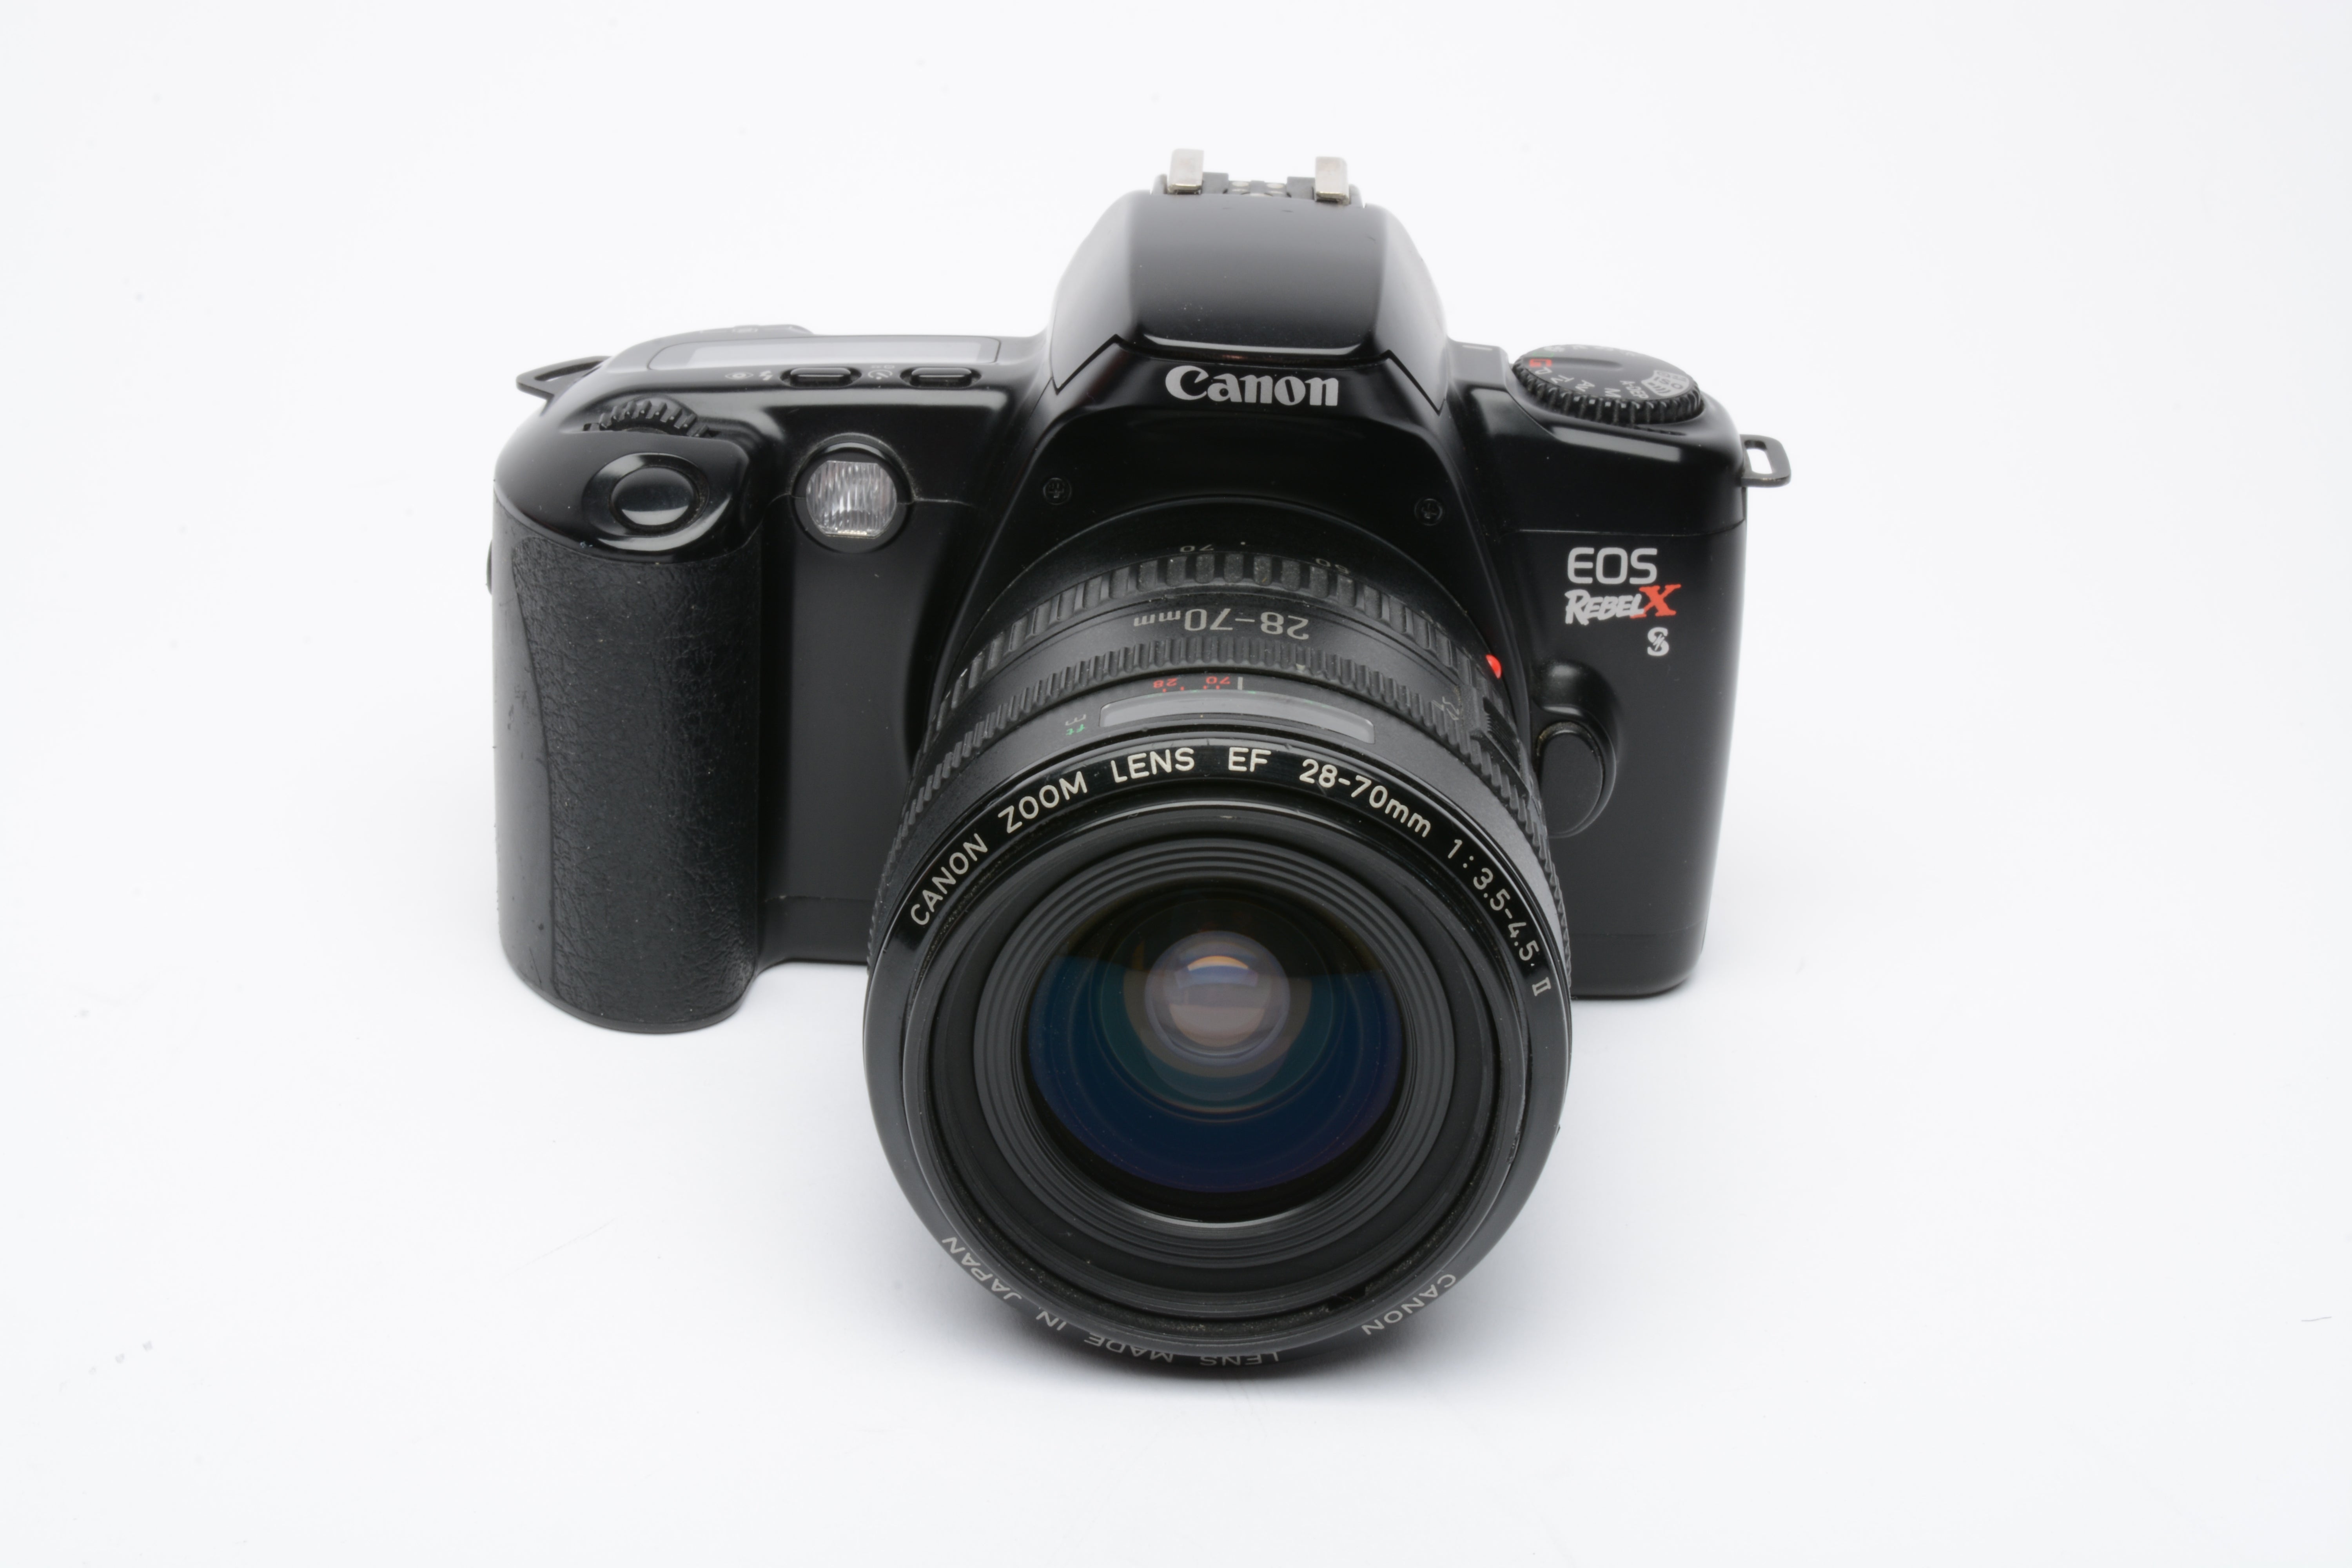 Canon EOS Rebel XS 35mm SLR, w/EF 28-70mm F3.5-4.5 II zoom, strap